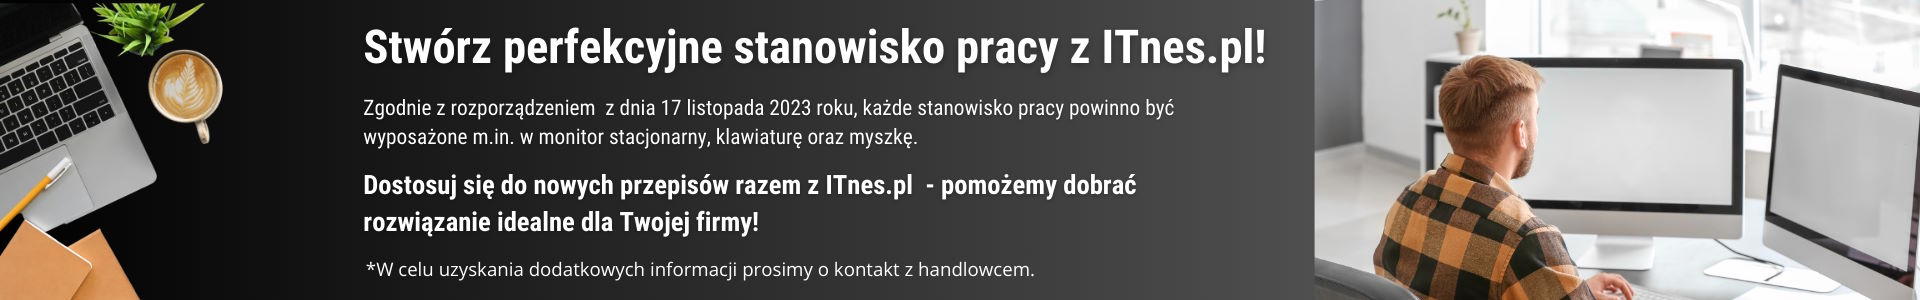 Stwórz perfekcyjne stanowisko pracy z ITnes.pl